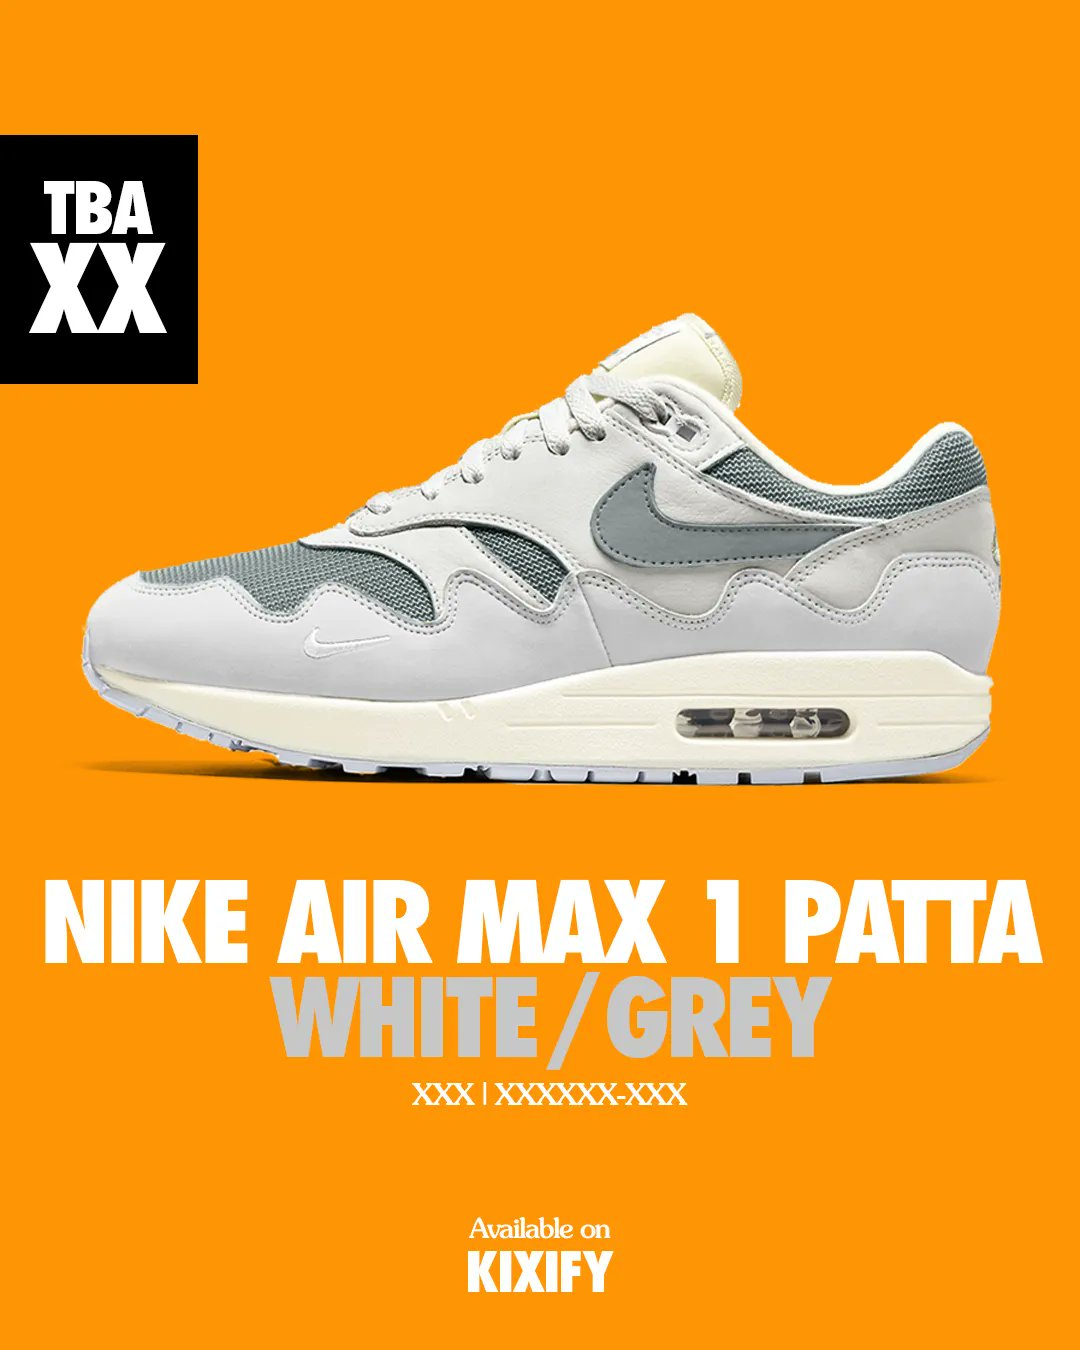 Air Max 1 Patta White Grey